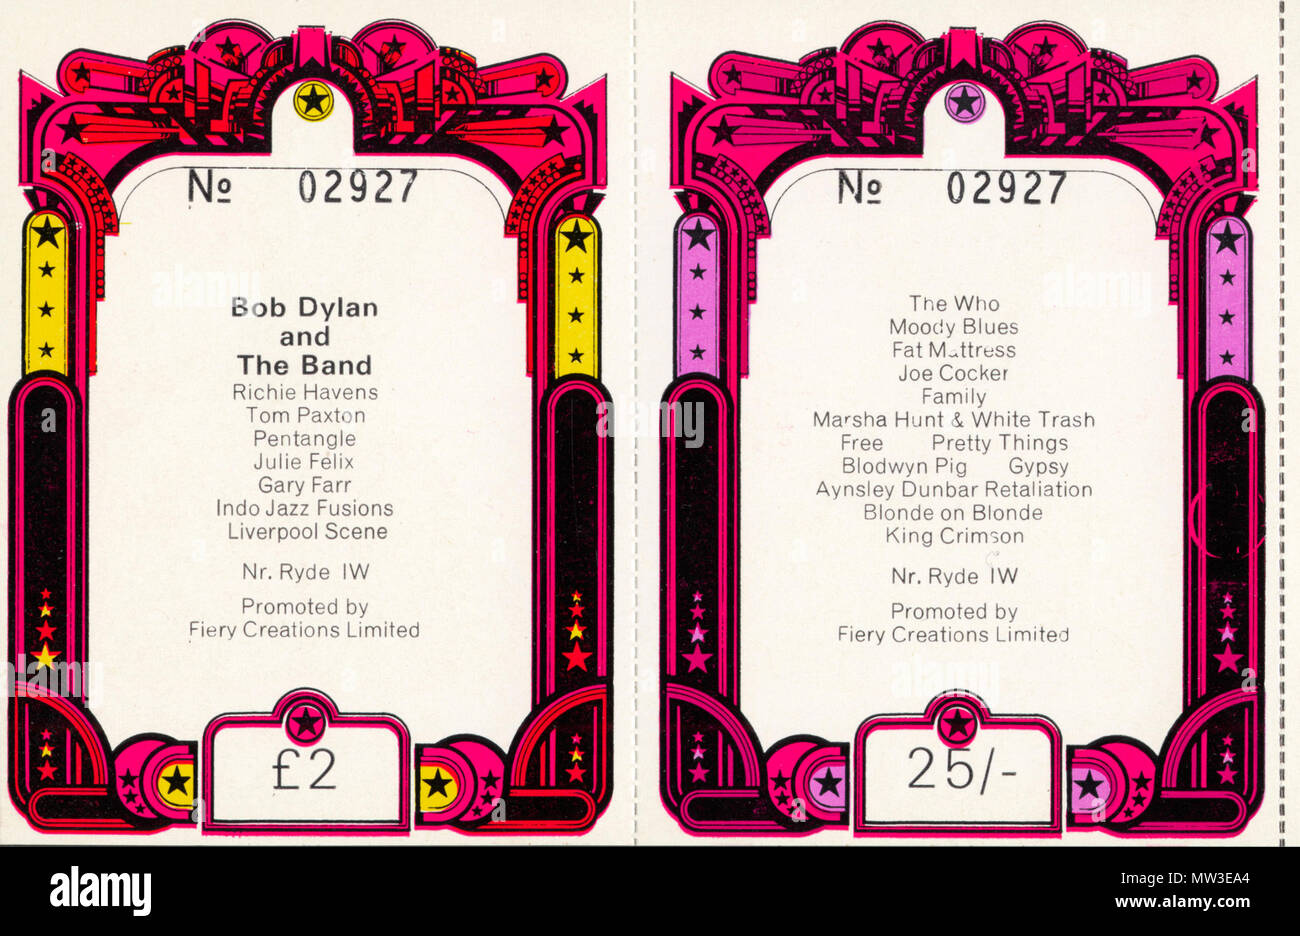 Original Vintage Tickets aus der ersten Isle Of Wight Festival 1969. Diese waren unverkauft in den Schubladen der ein Reisebüro auf der Insel Wight Kürzlich gefunden, und haben die verschrottet und verkauft auf dem Markt des Sammlers. Sie sind mit der ikonischen Artwork für die Show und eine Liste der bekannten Bands auf der Rückseite zu erscheinen. Der Eintrittspreis 25./- am Samstag, £ 2 am Sonntag, als Bob Dylan durch die Schlagzeile war. Vintage Konzert Tickets sind jetzt sehr nach, mit denen, die für die klassischen Bands der 60er und 70er Jahren holen drei Abbildung Summen gesucht. Stockfoto